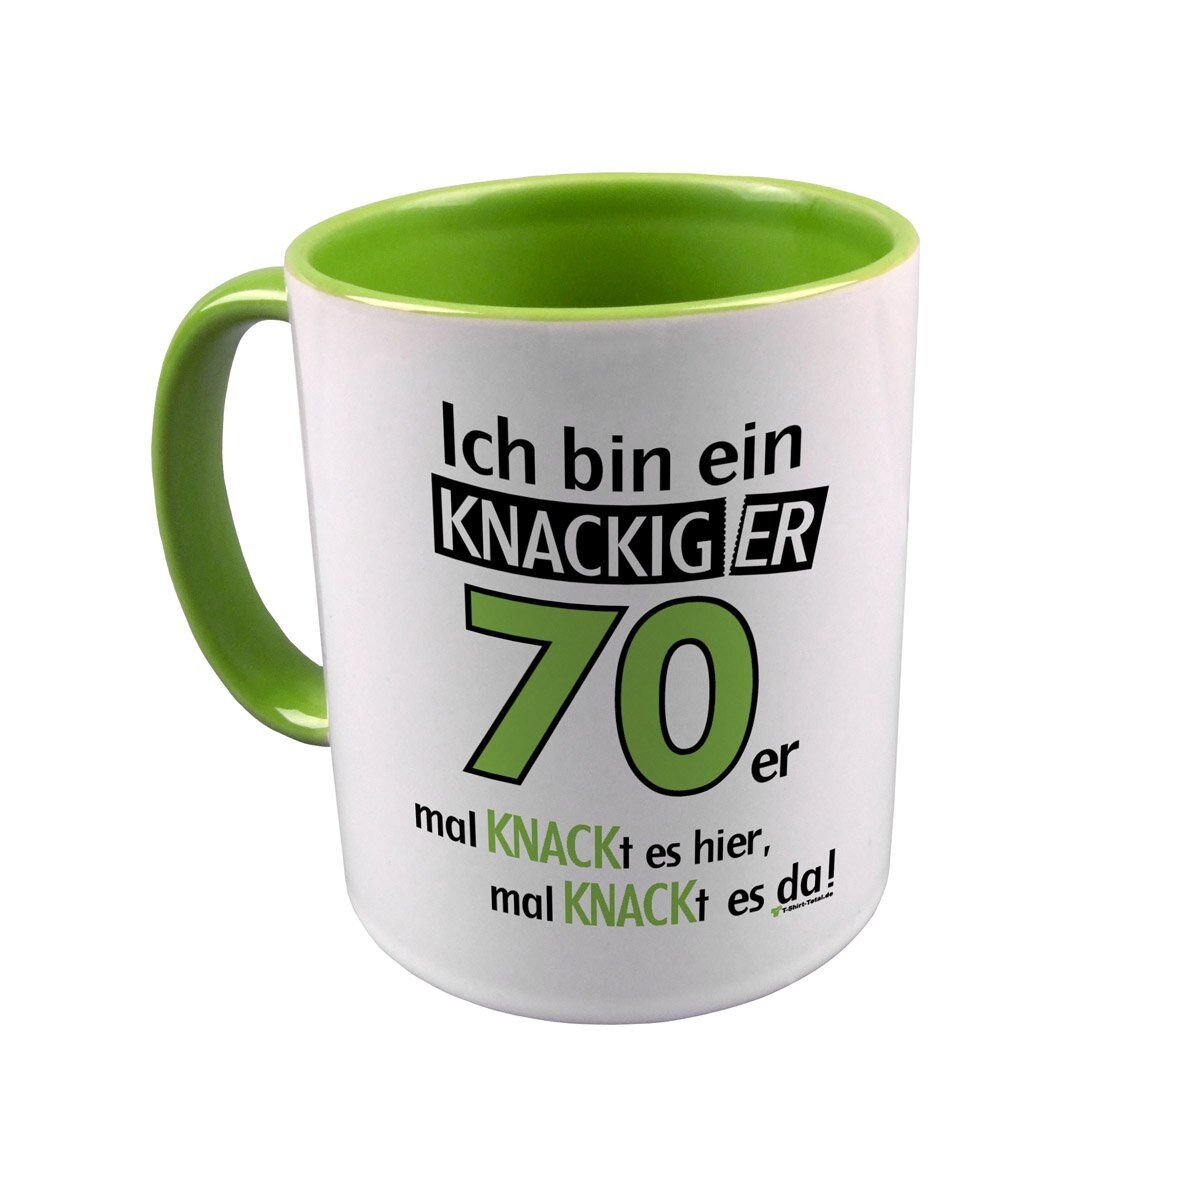 Knackiger 70er Tasse hellgrün / weiß